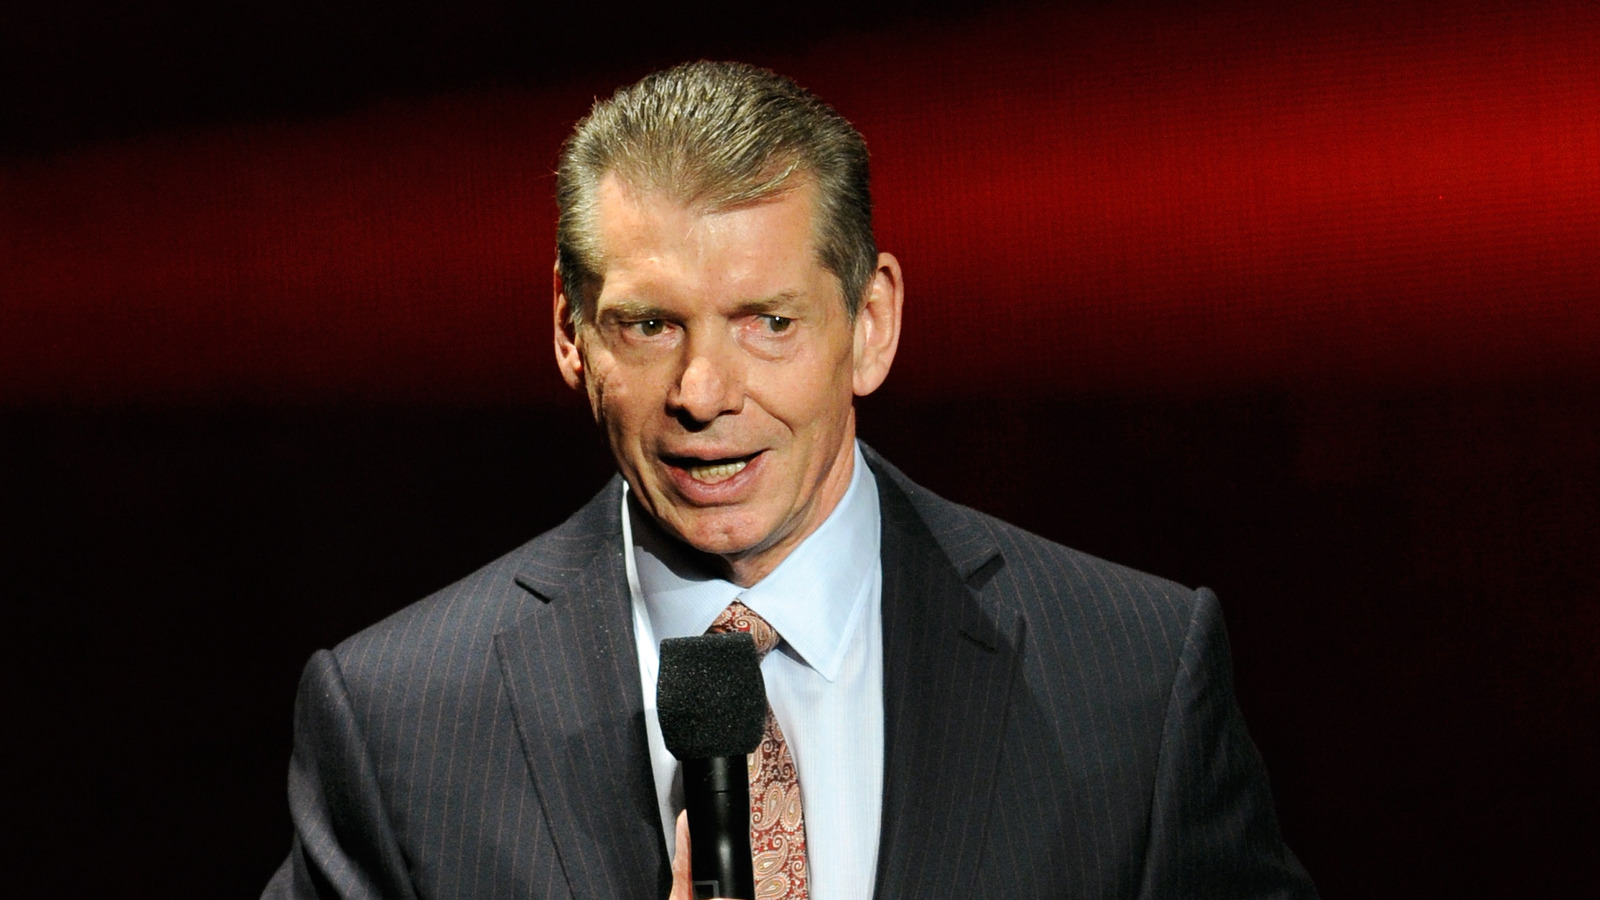 Eric Bischoff explica por qué no puede evitar admirar a Vince McMahon de la WWE